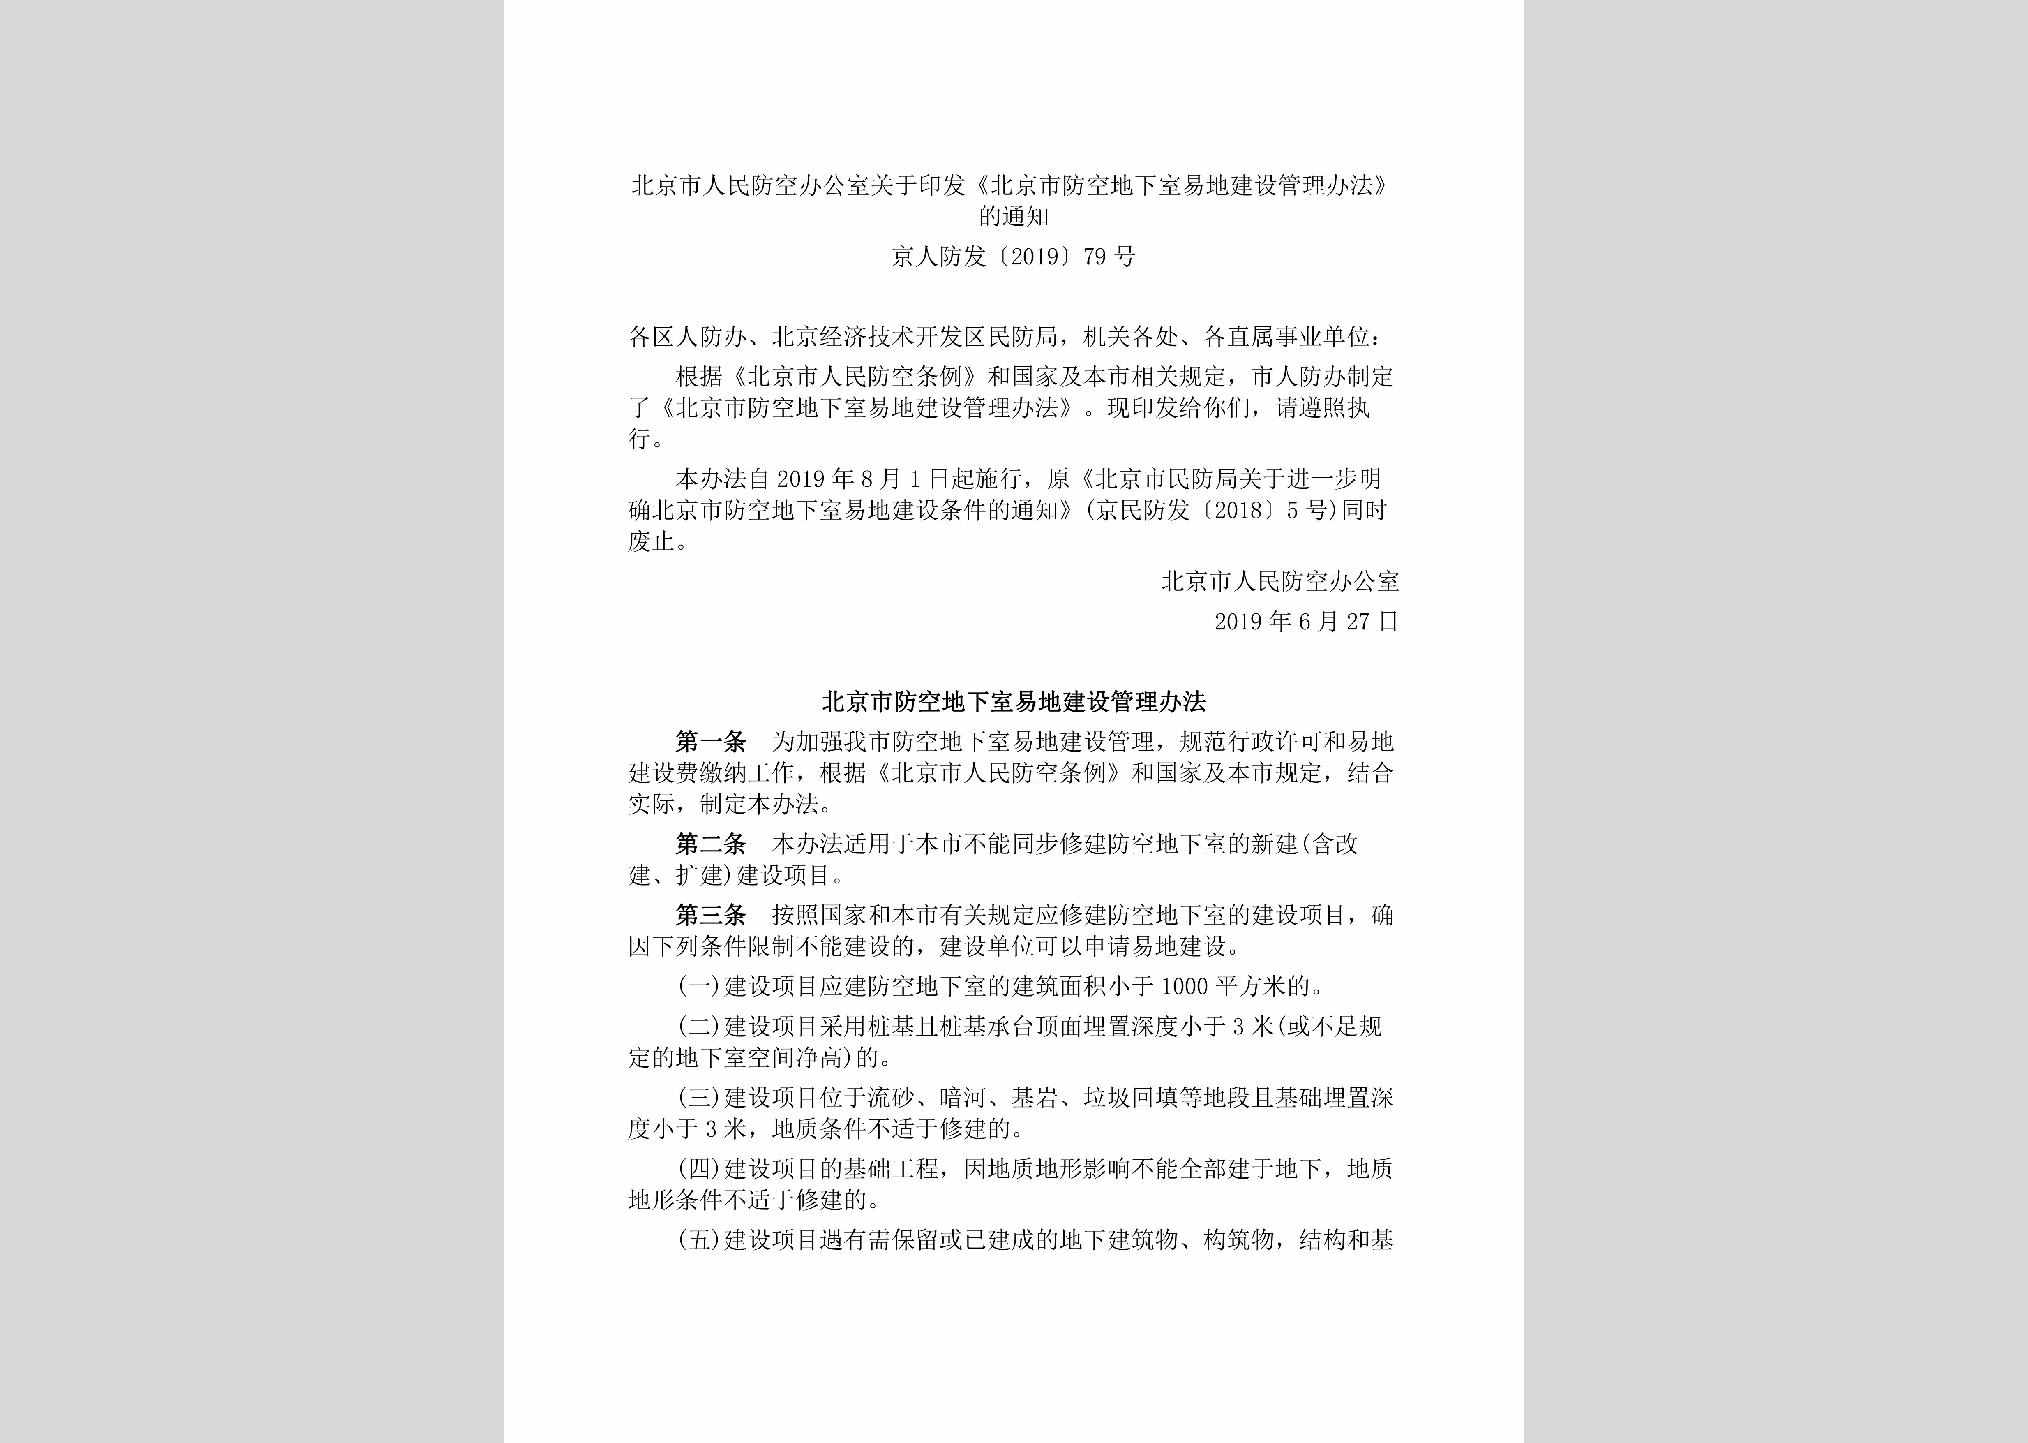 京人防发[2019]79号：北京市人民防空办公室关于印发《北京市防空地下室易地建设管理办法》的通知